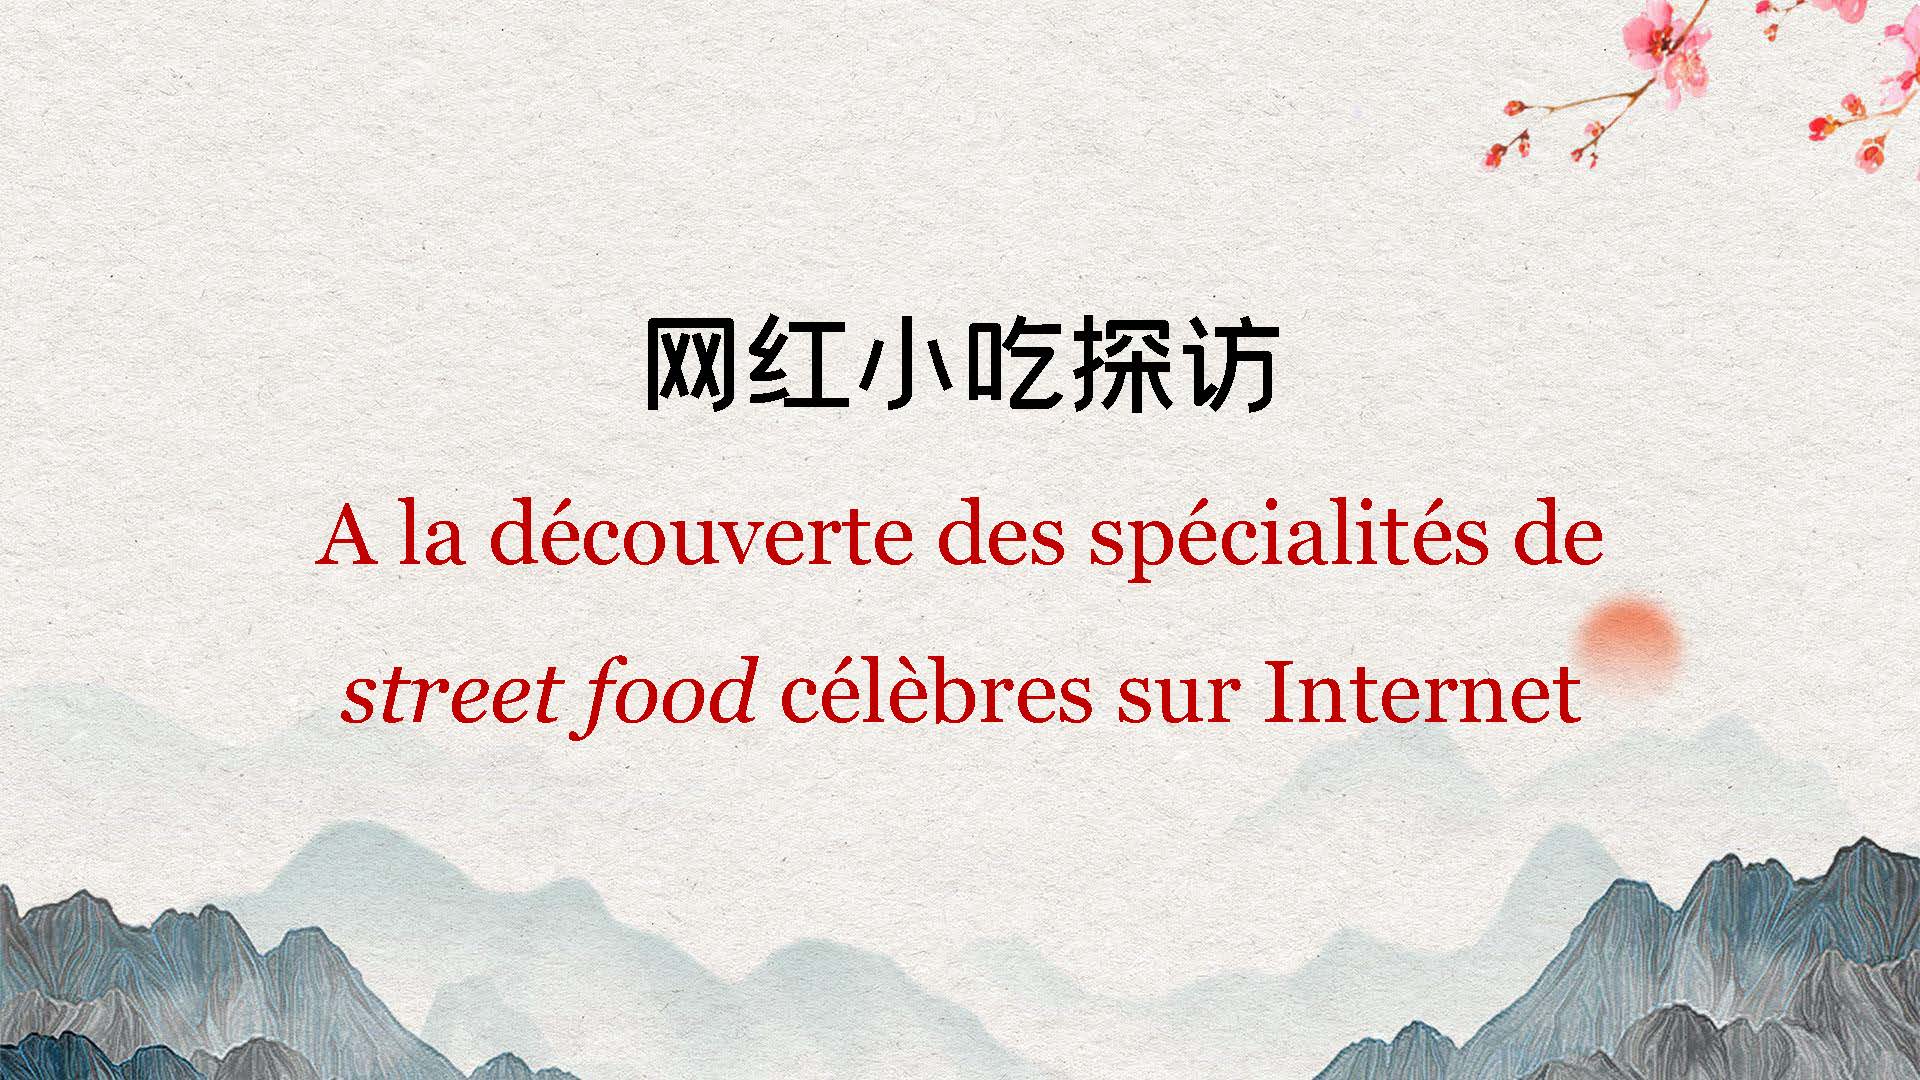 A la découverte des spécialités de street food célèbres sur Internet